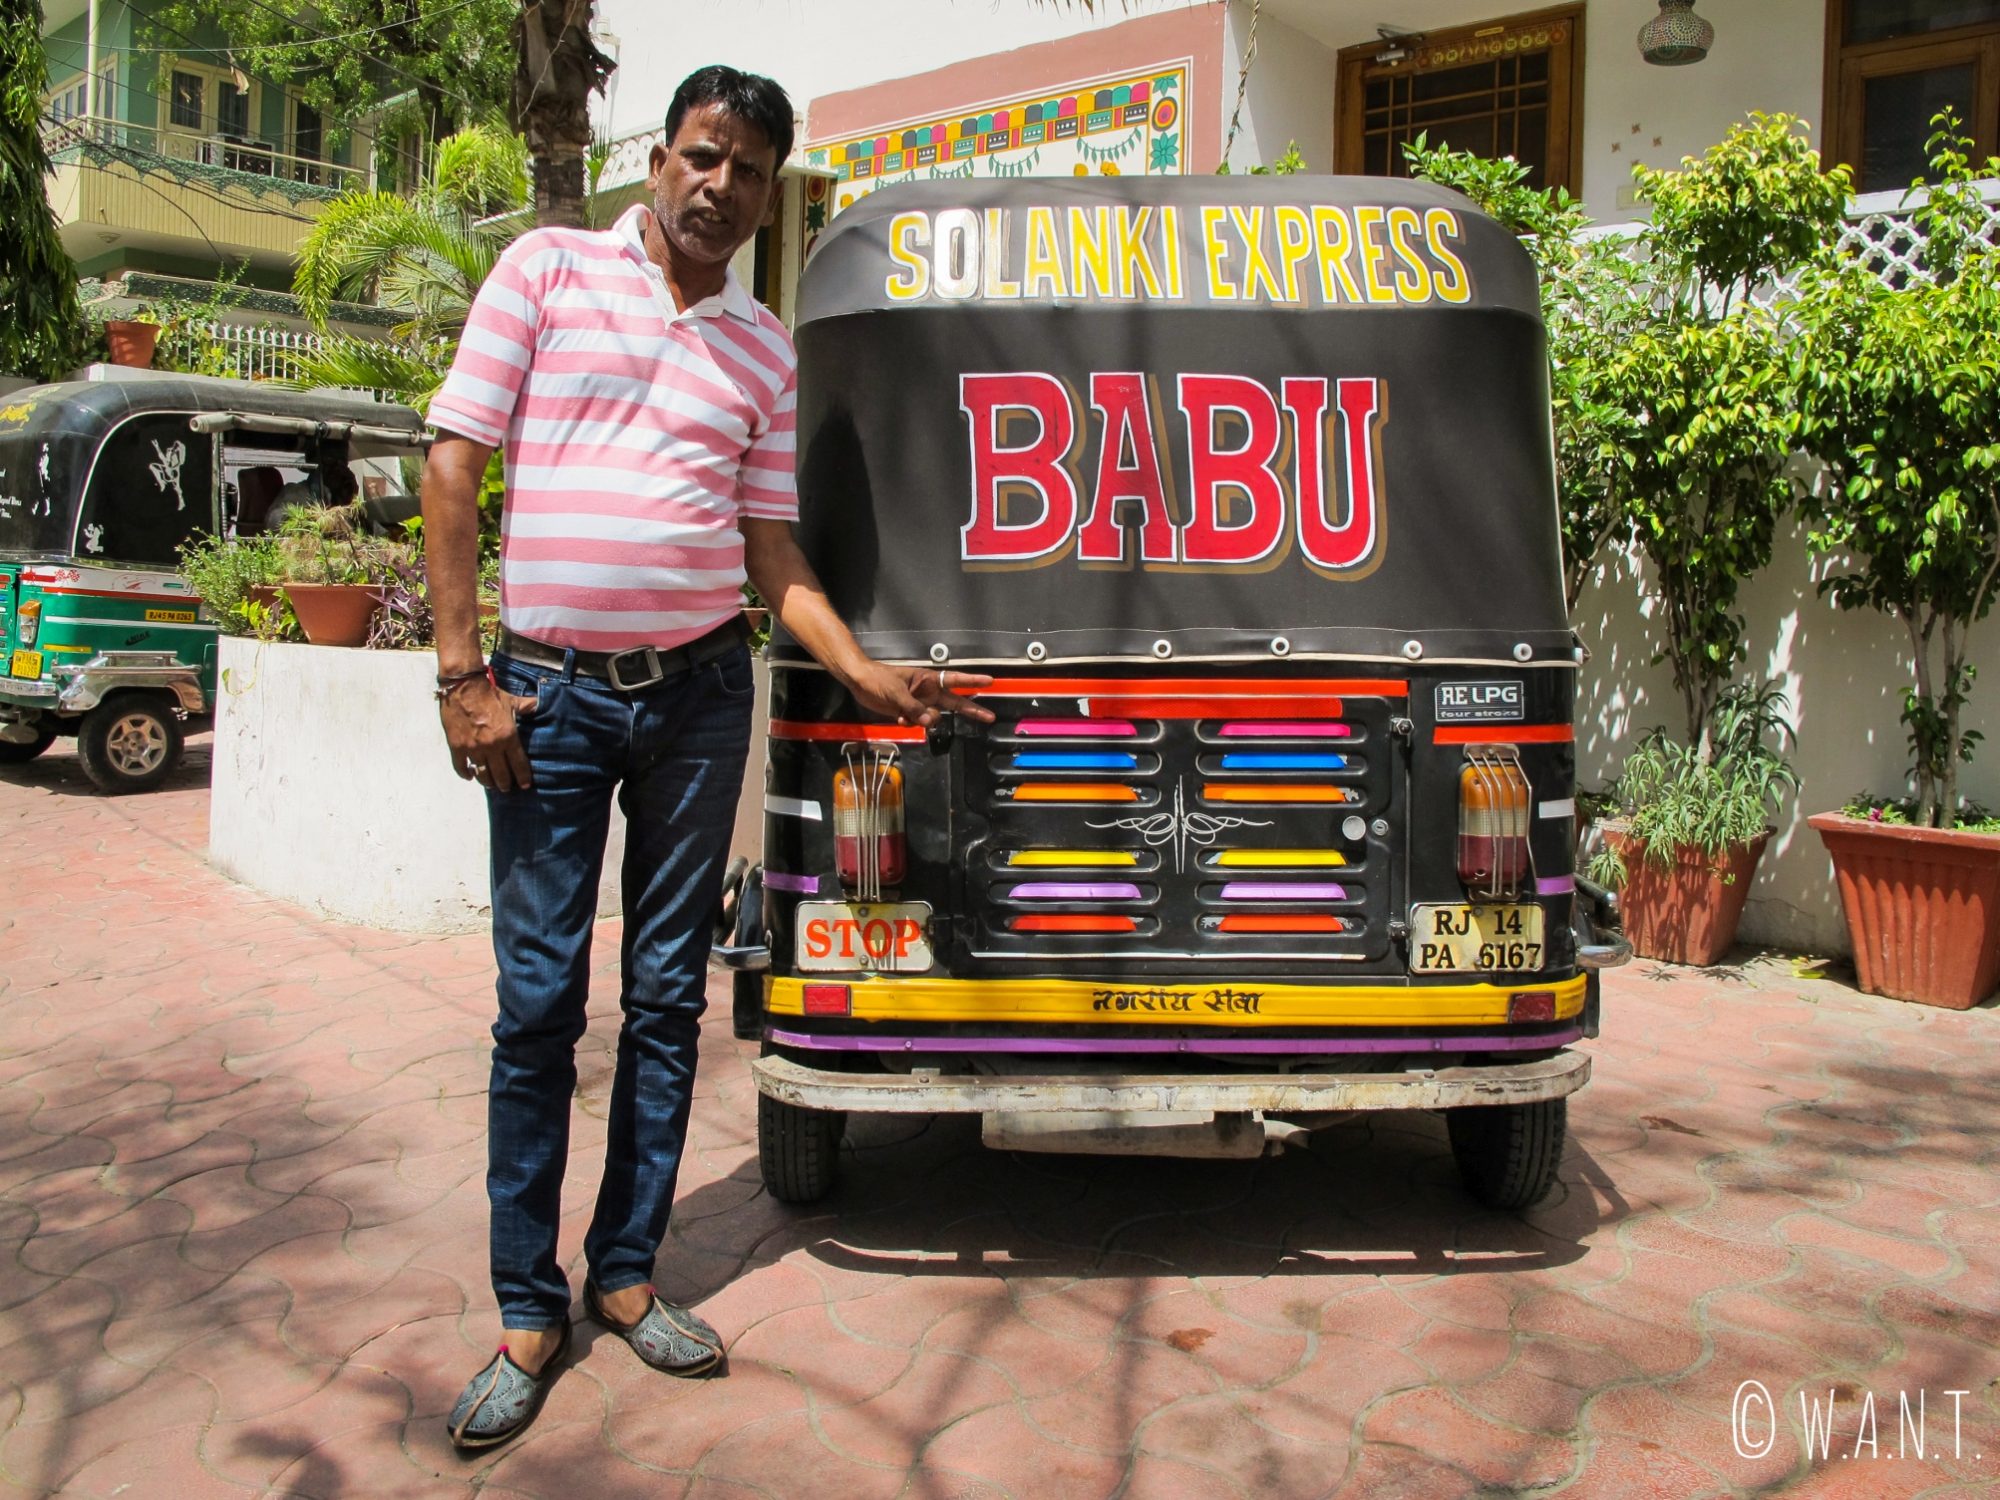 Notre chauffeur de rickshaw Babu prend la pause lors de notre journée d'excursion aux abords de Jaipur